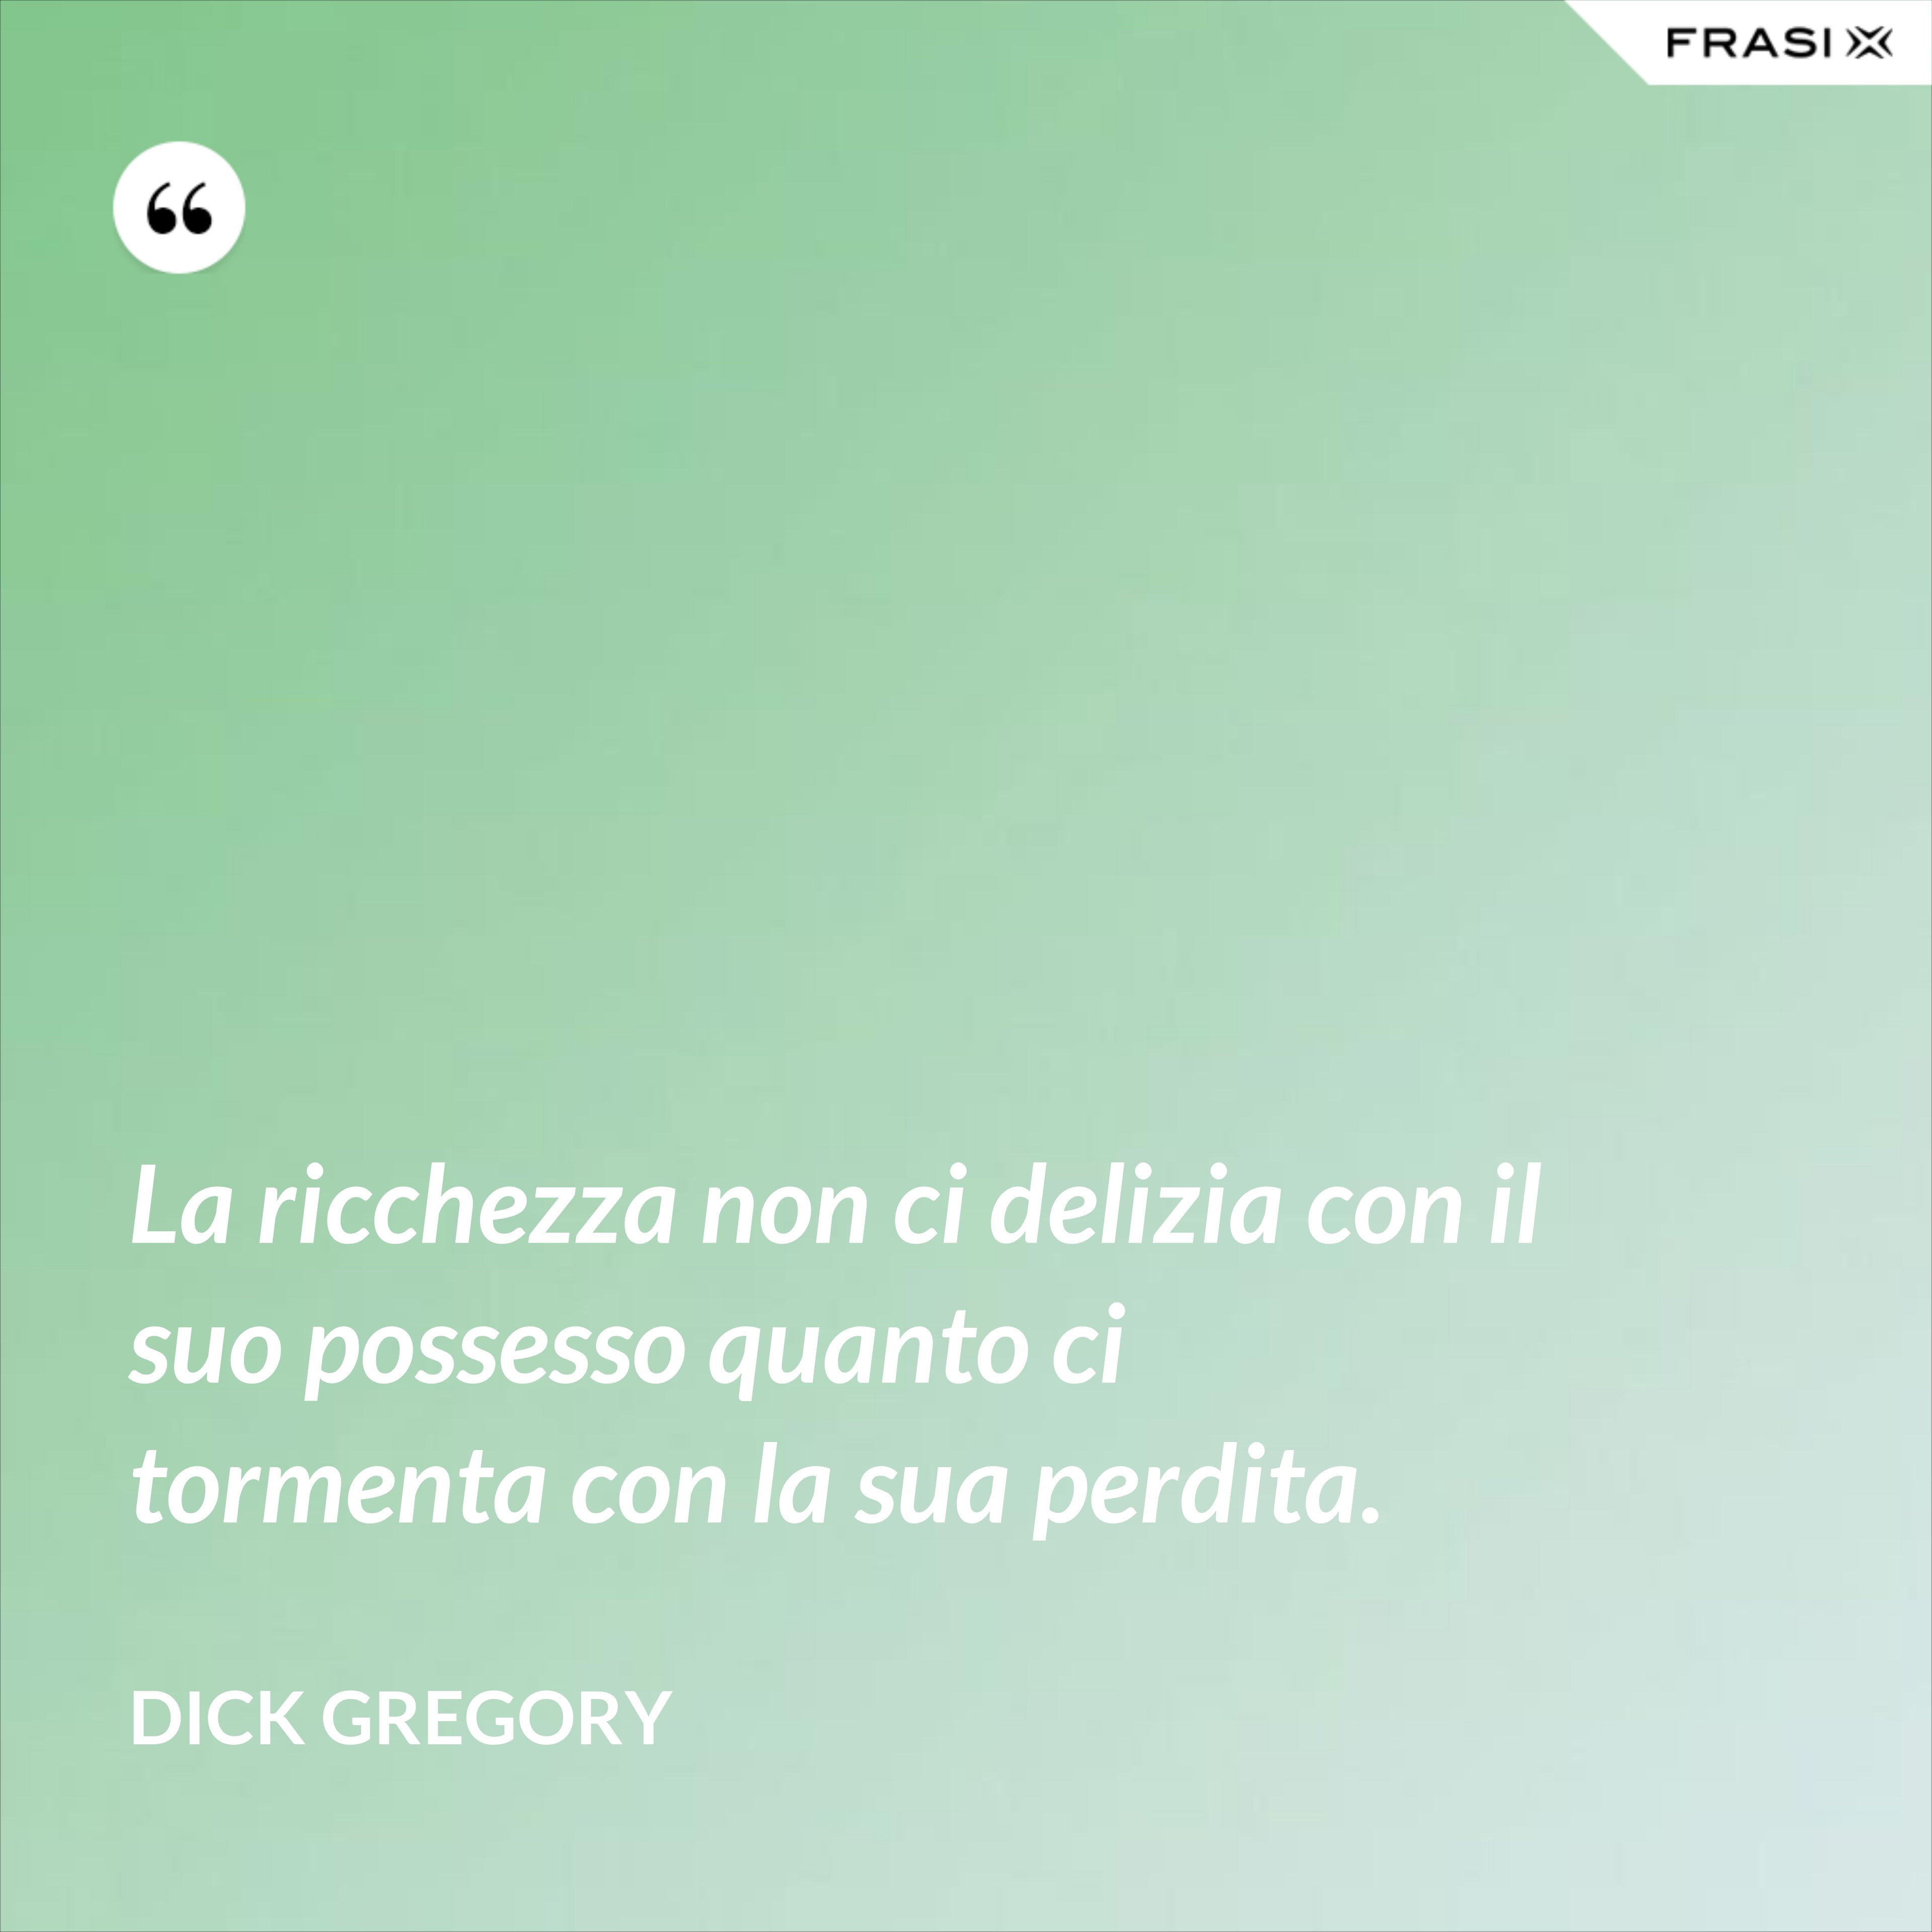 La ricchezza non ci delizia con il suo possesso quanto ci tormenta con la sua perdita. - Dick Gregory